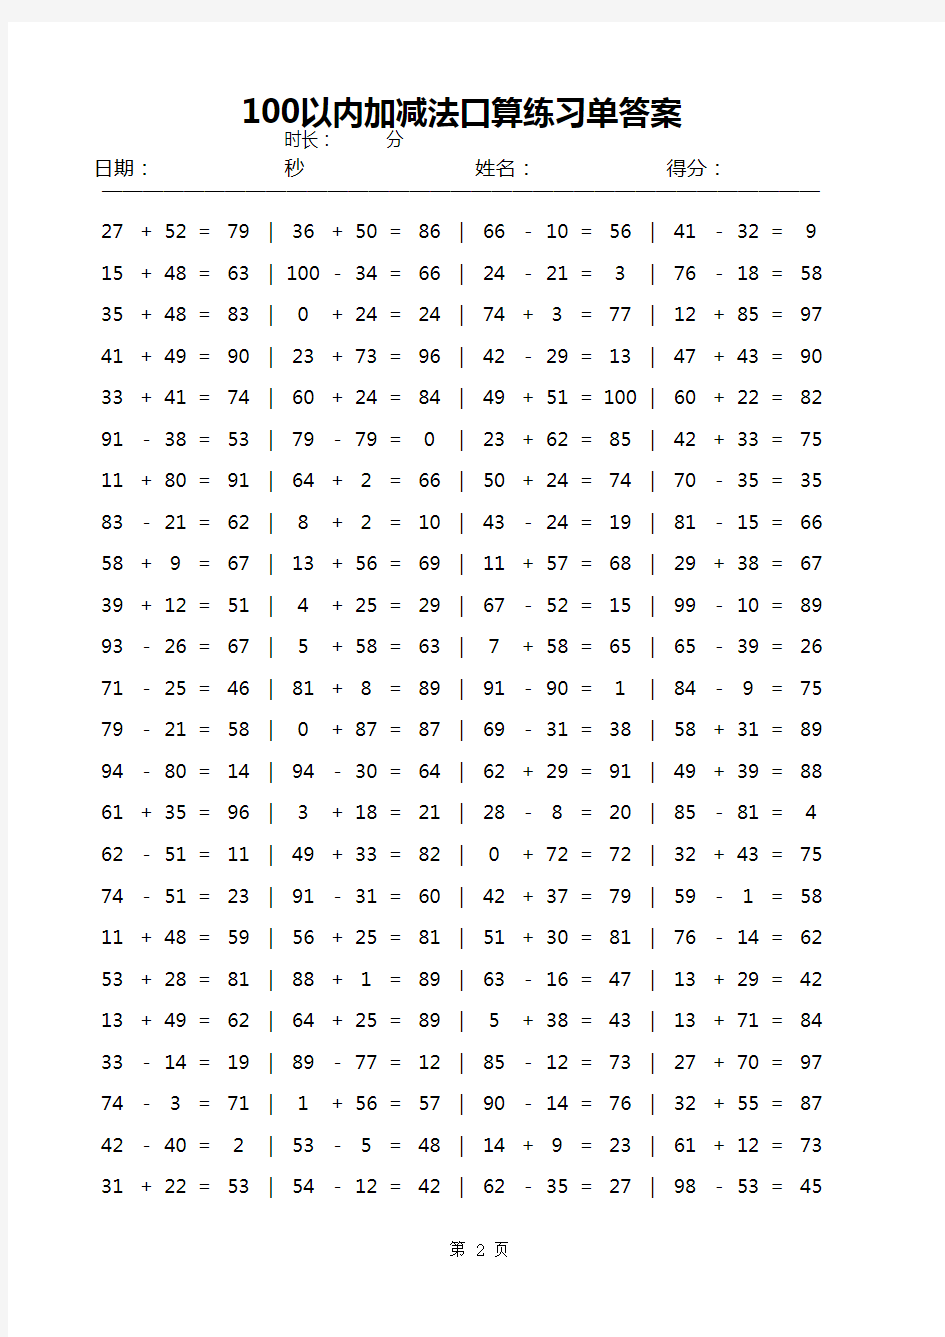 100以内加减法口算练习单自动生成器无限生成题目(含答案)A4排版每页100题直接打印